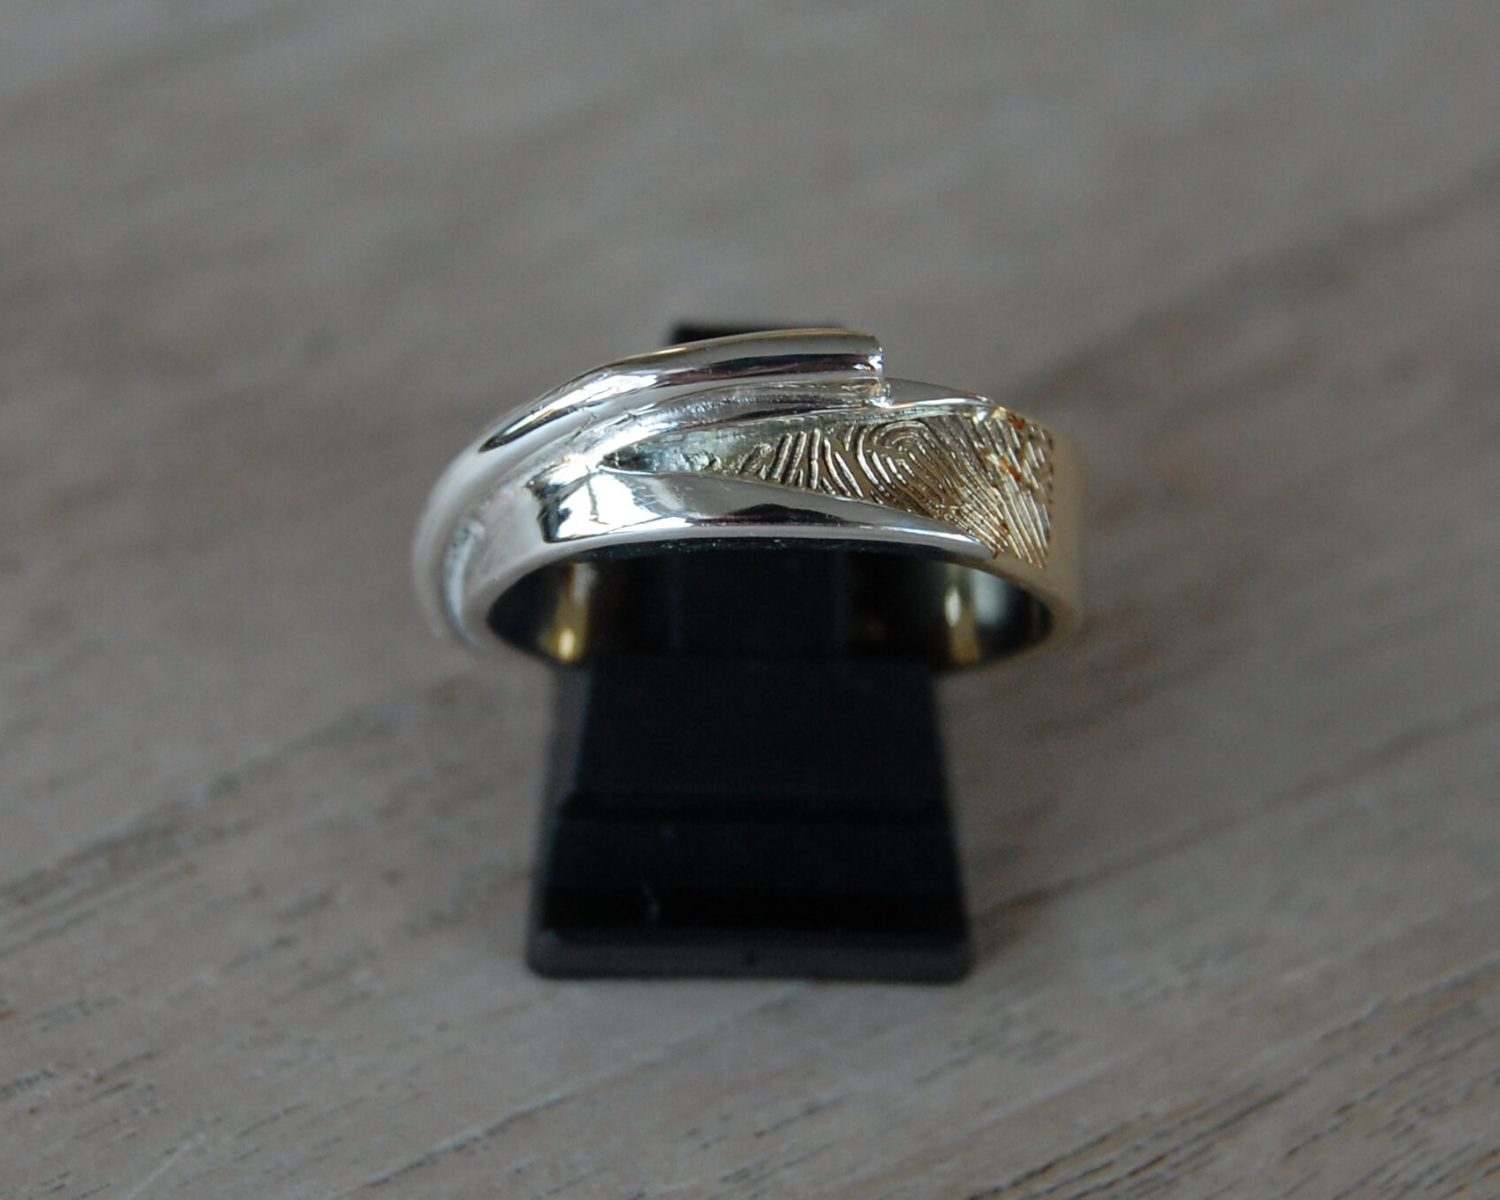 Ring gemaakt uit een aangeleverde trouwring. In het zilveren buisje is as gezet en een vingerafdruk is in het goud gelaserd.